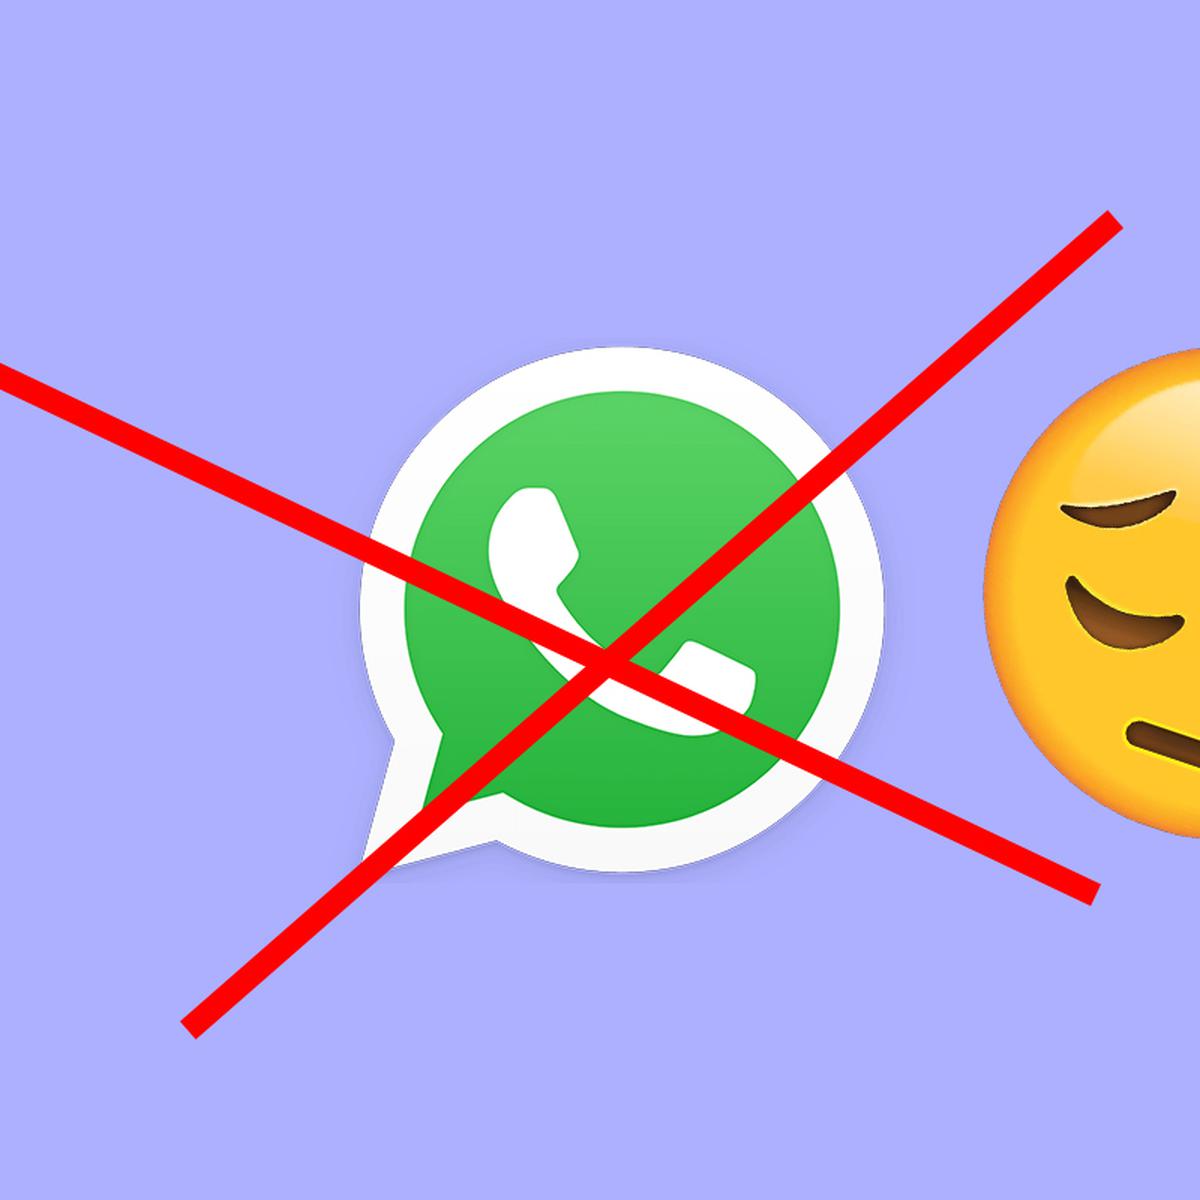 WhatsApp llega a los smartphones baratos sin pantalla táctil, Fotos, Nokia, Alcatel, Smartphone, Wpp, Android, KaiOS, Google, Tecnología